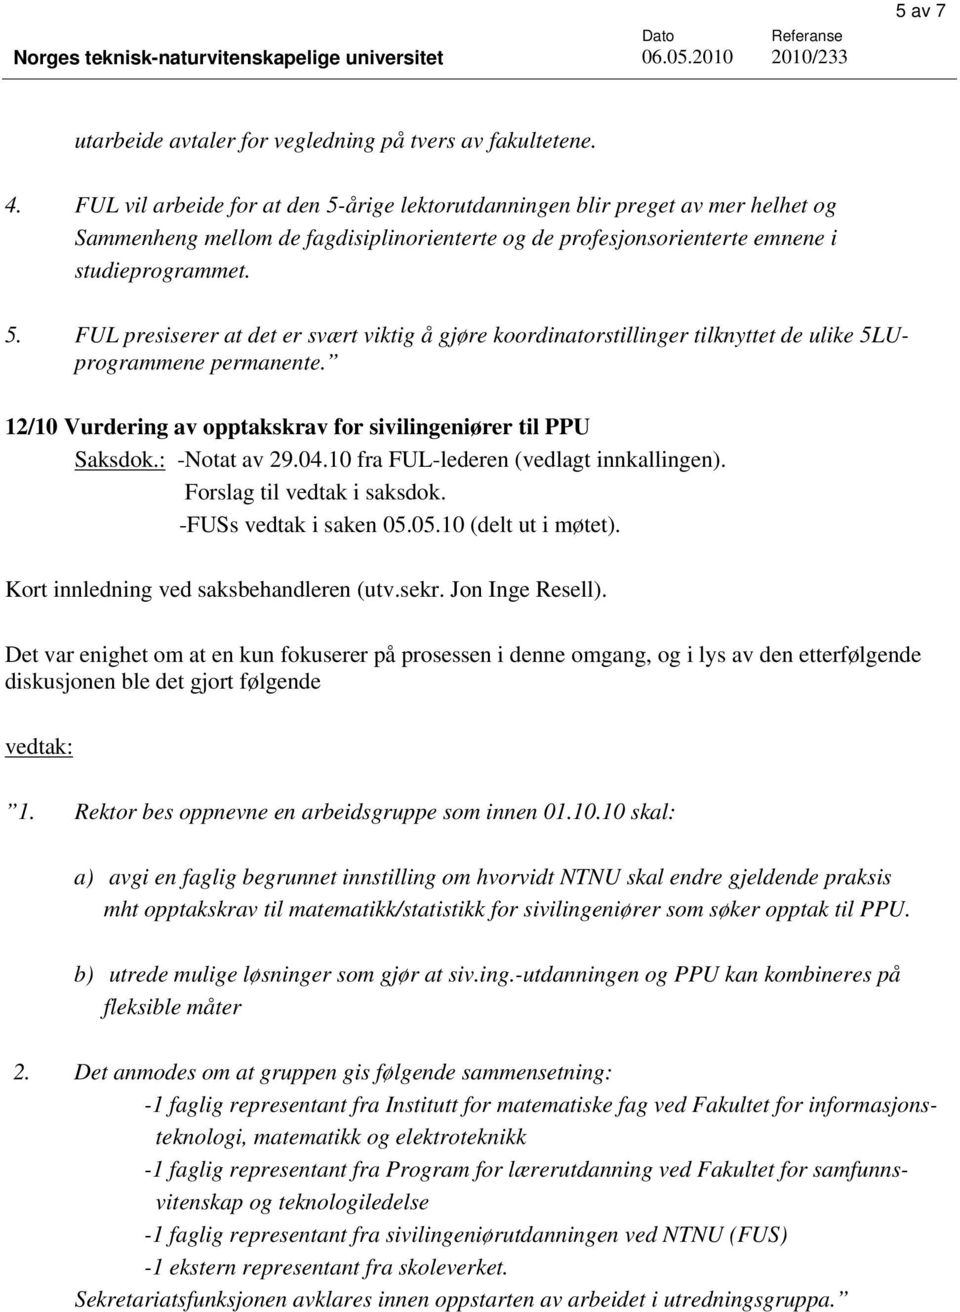 12/10 Vurdering av opptakskrav for sivilingeniører til PPU Saksdok.: -Notat av 29.04.10 fra FUL-lederen (vedlagt innkallingen). Forslag til vedtak i saksdok. -FUSs vedtak i saken 05.